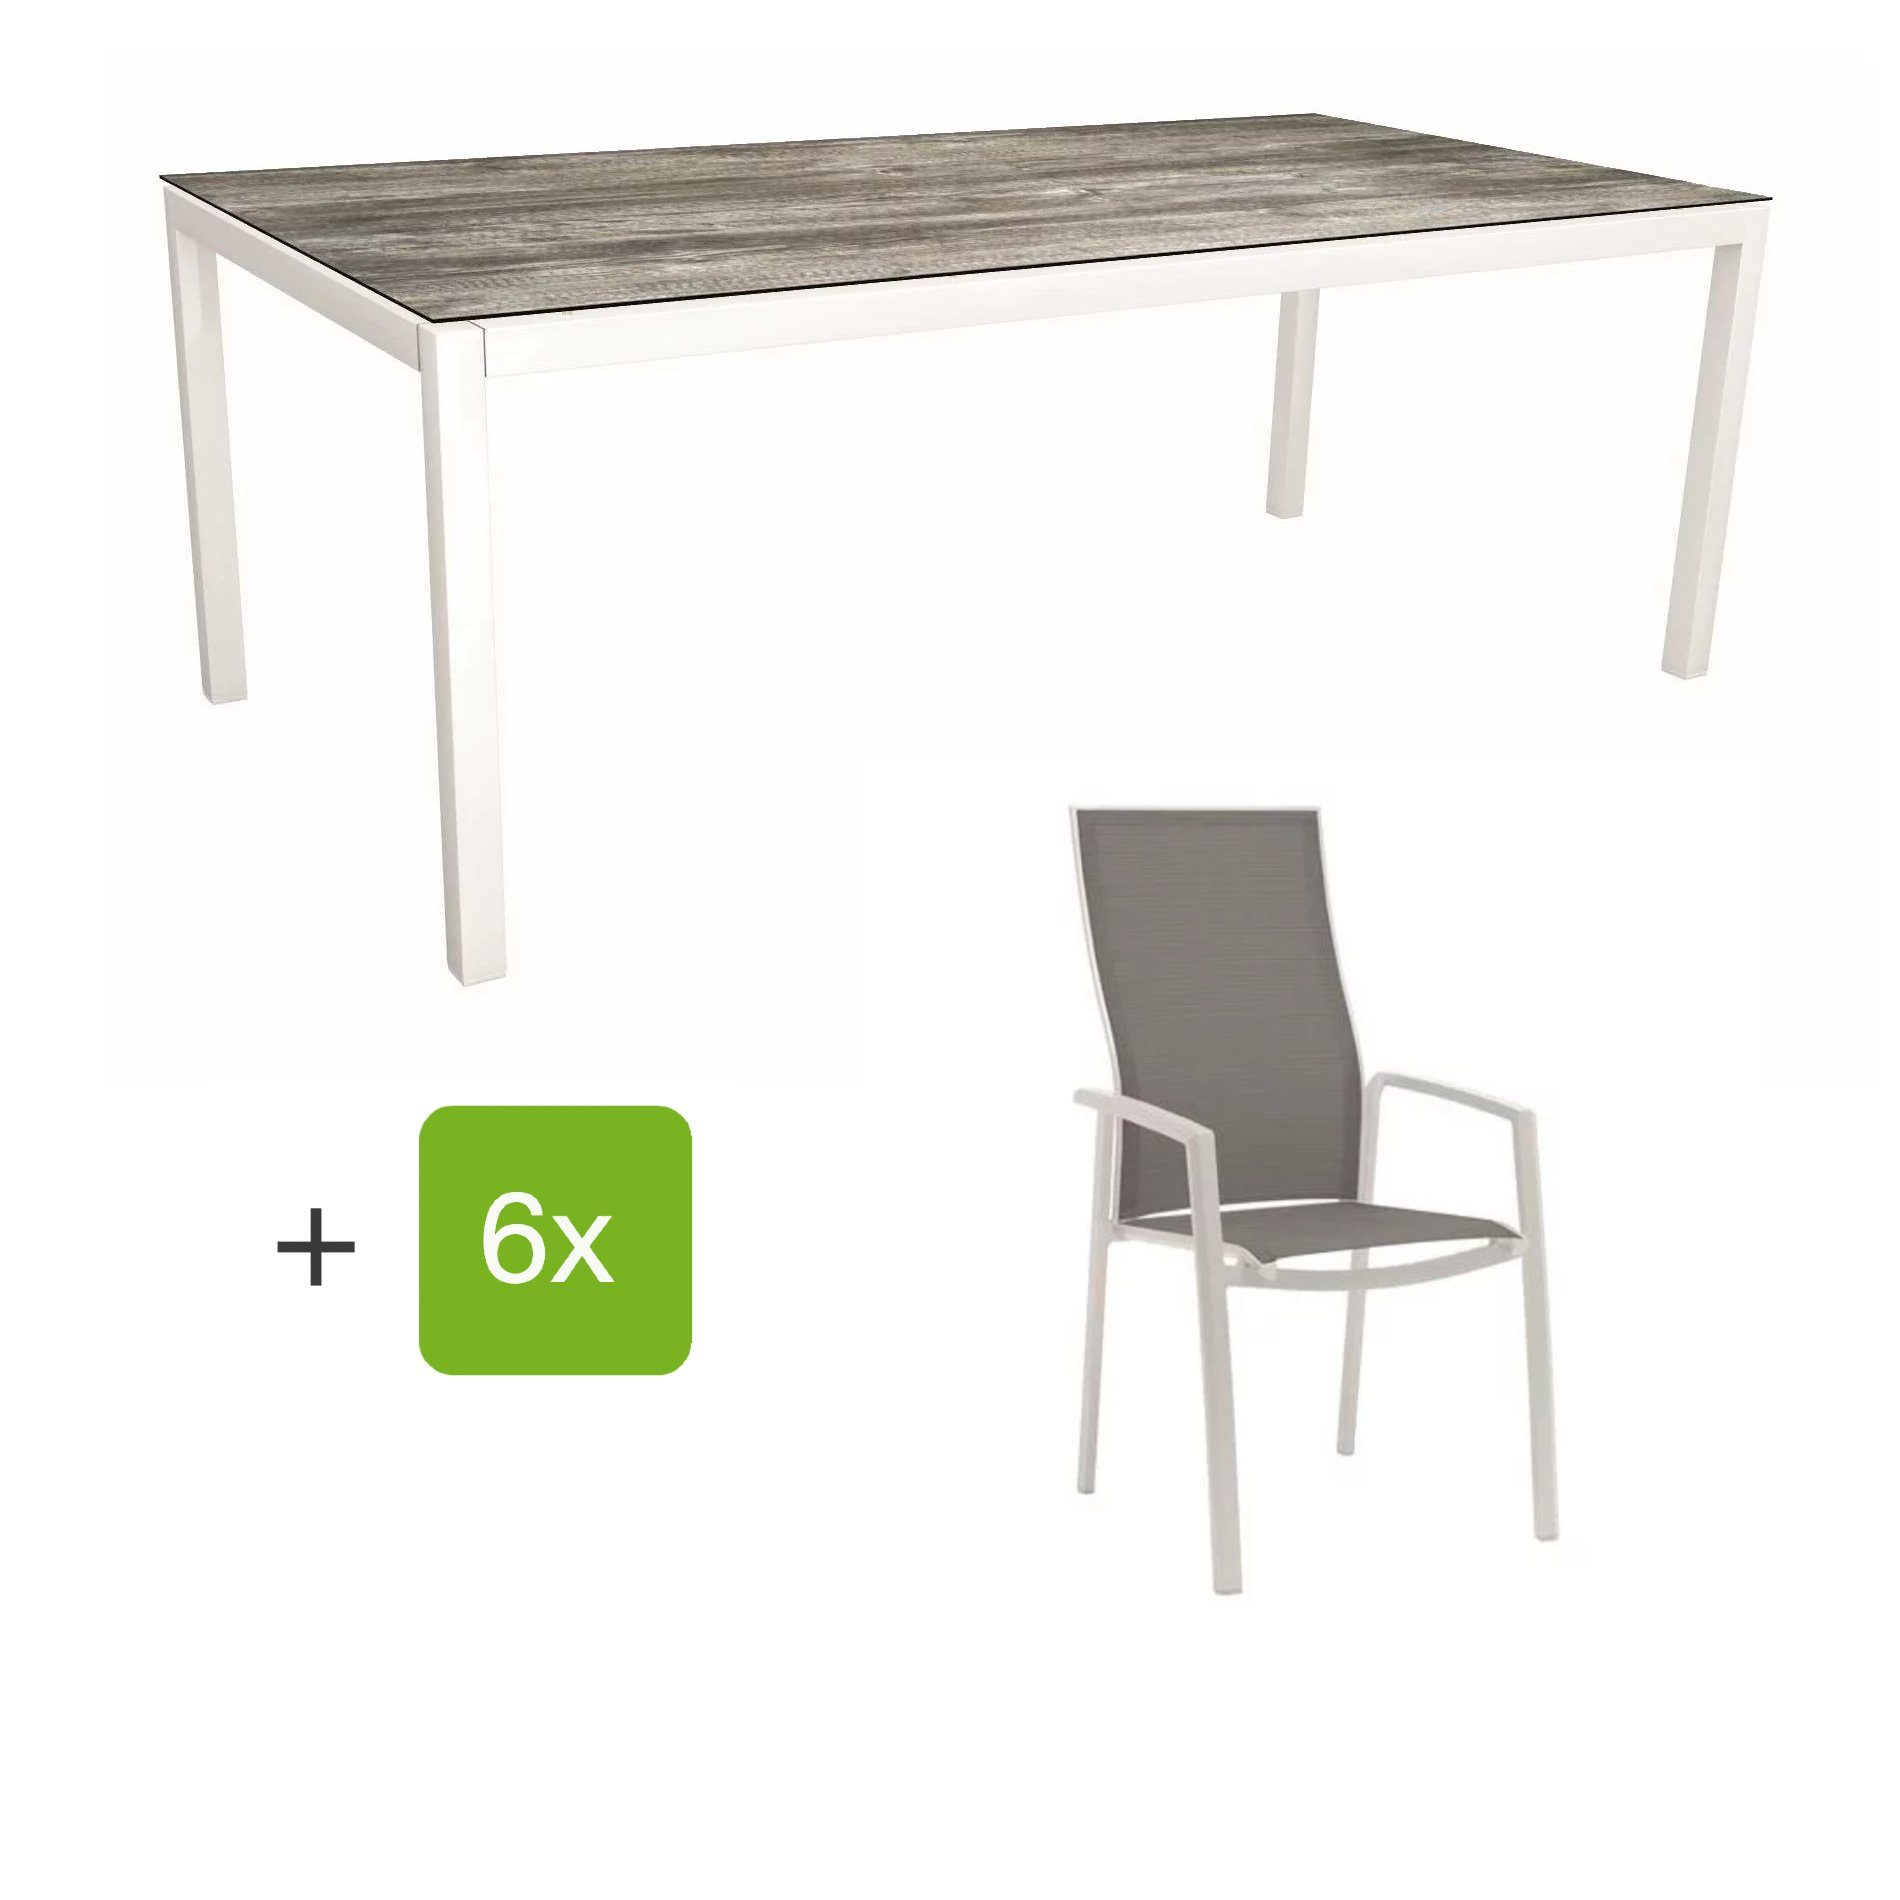 Stern Gartenmöbel-Set mit Hochlehner "Kari", Textilen silber und Gartentisch 200x100 cm, Gestelle Alu weiß, Tischplatte HPL tundra grau